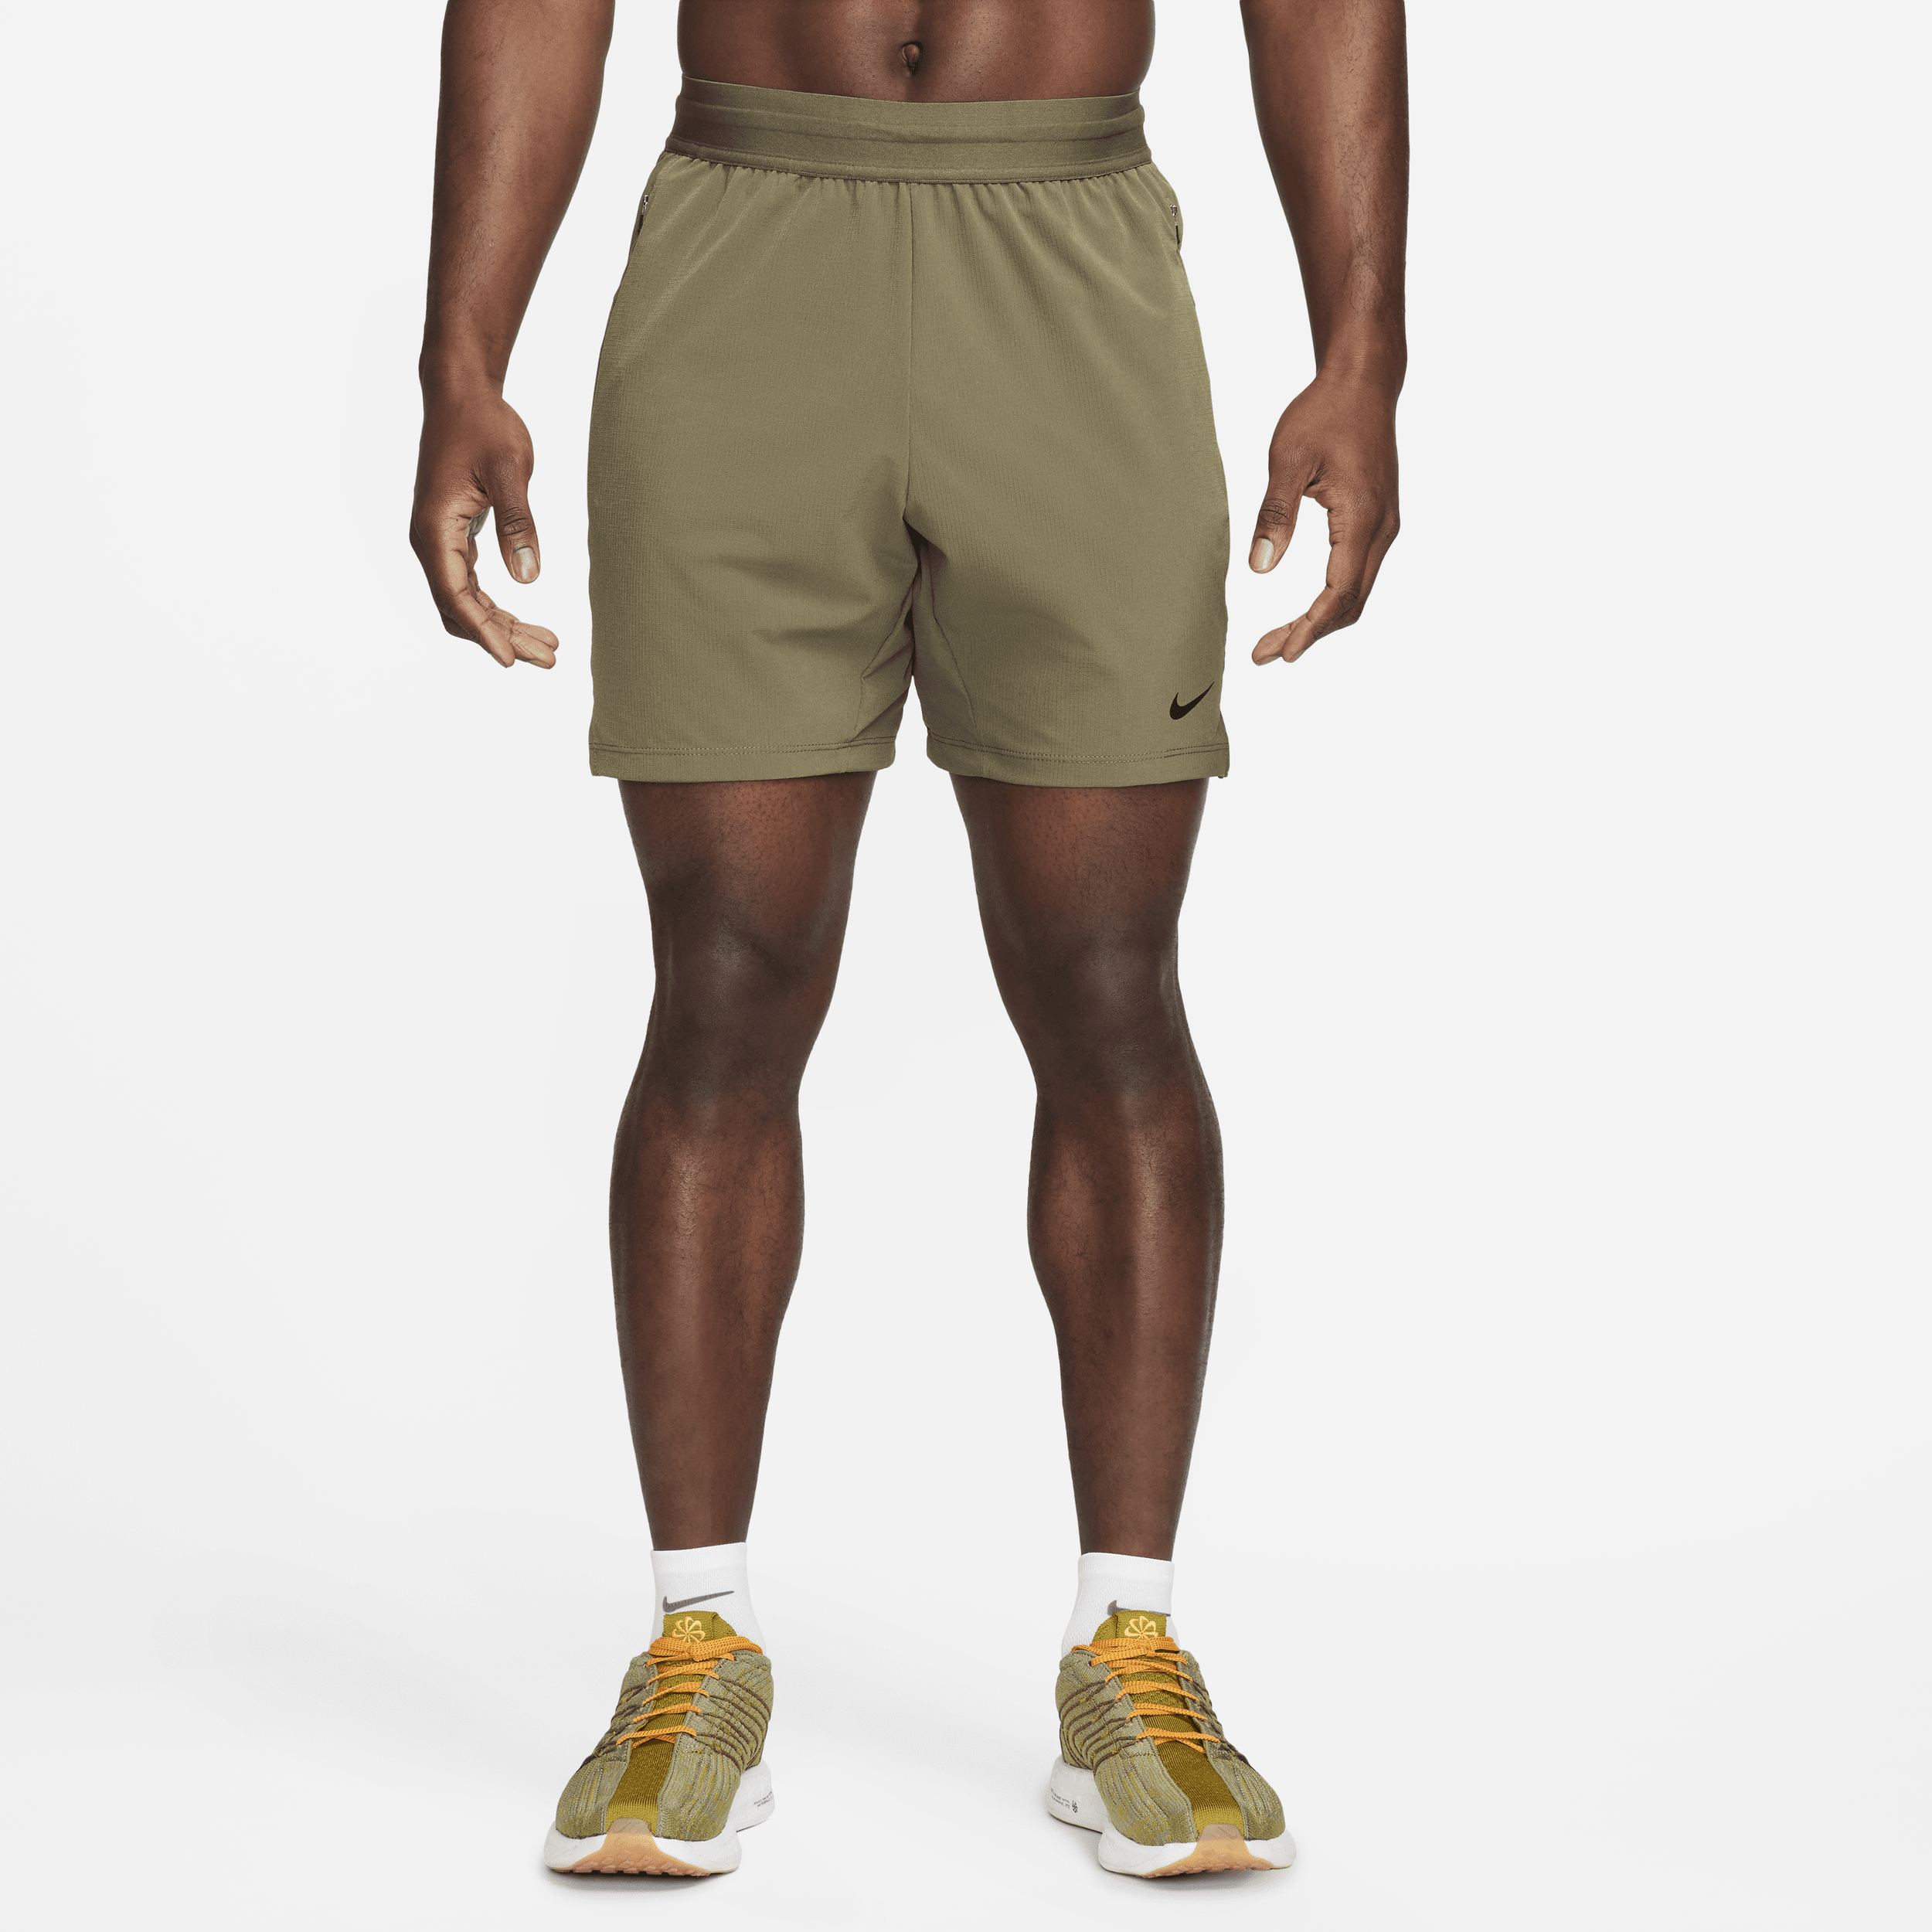 Shorts da fitness Dri-FIT non foderati 18 cm Nike Flex Rep 4.0 – Uomo - Verde